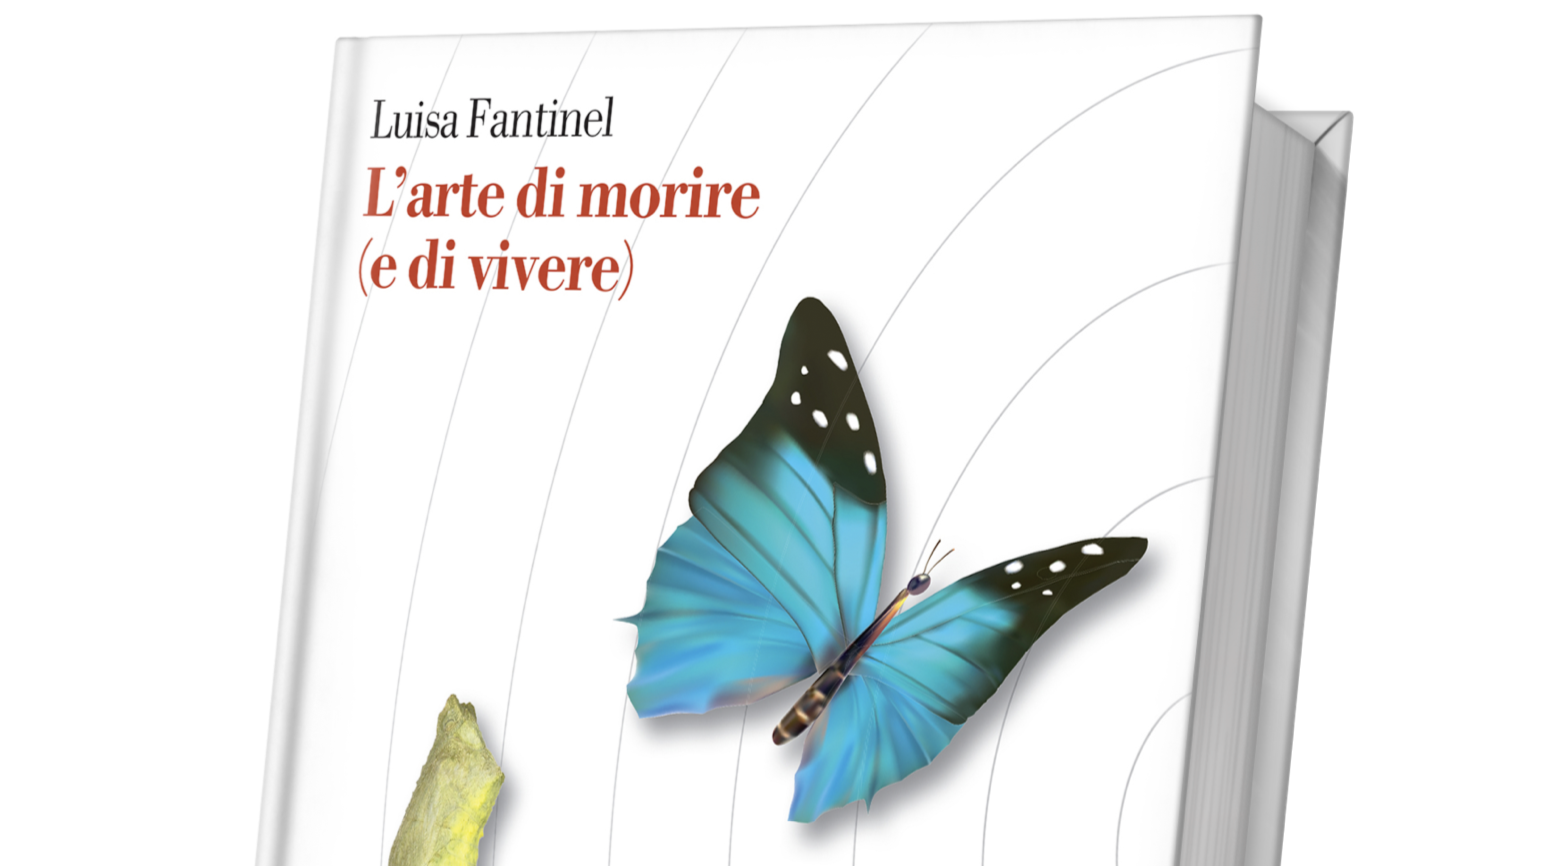 Presentazione del libro “L’arte di morire (e di vivere)” di Luisa Fantinel